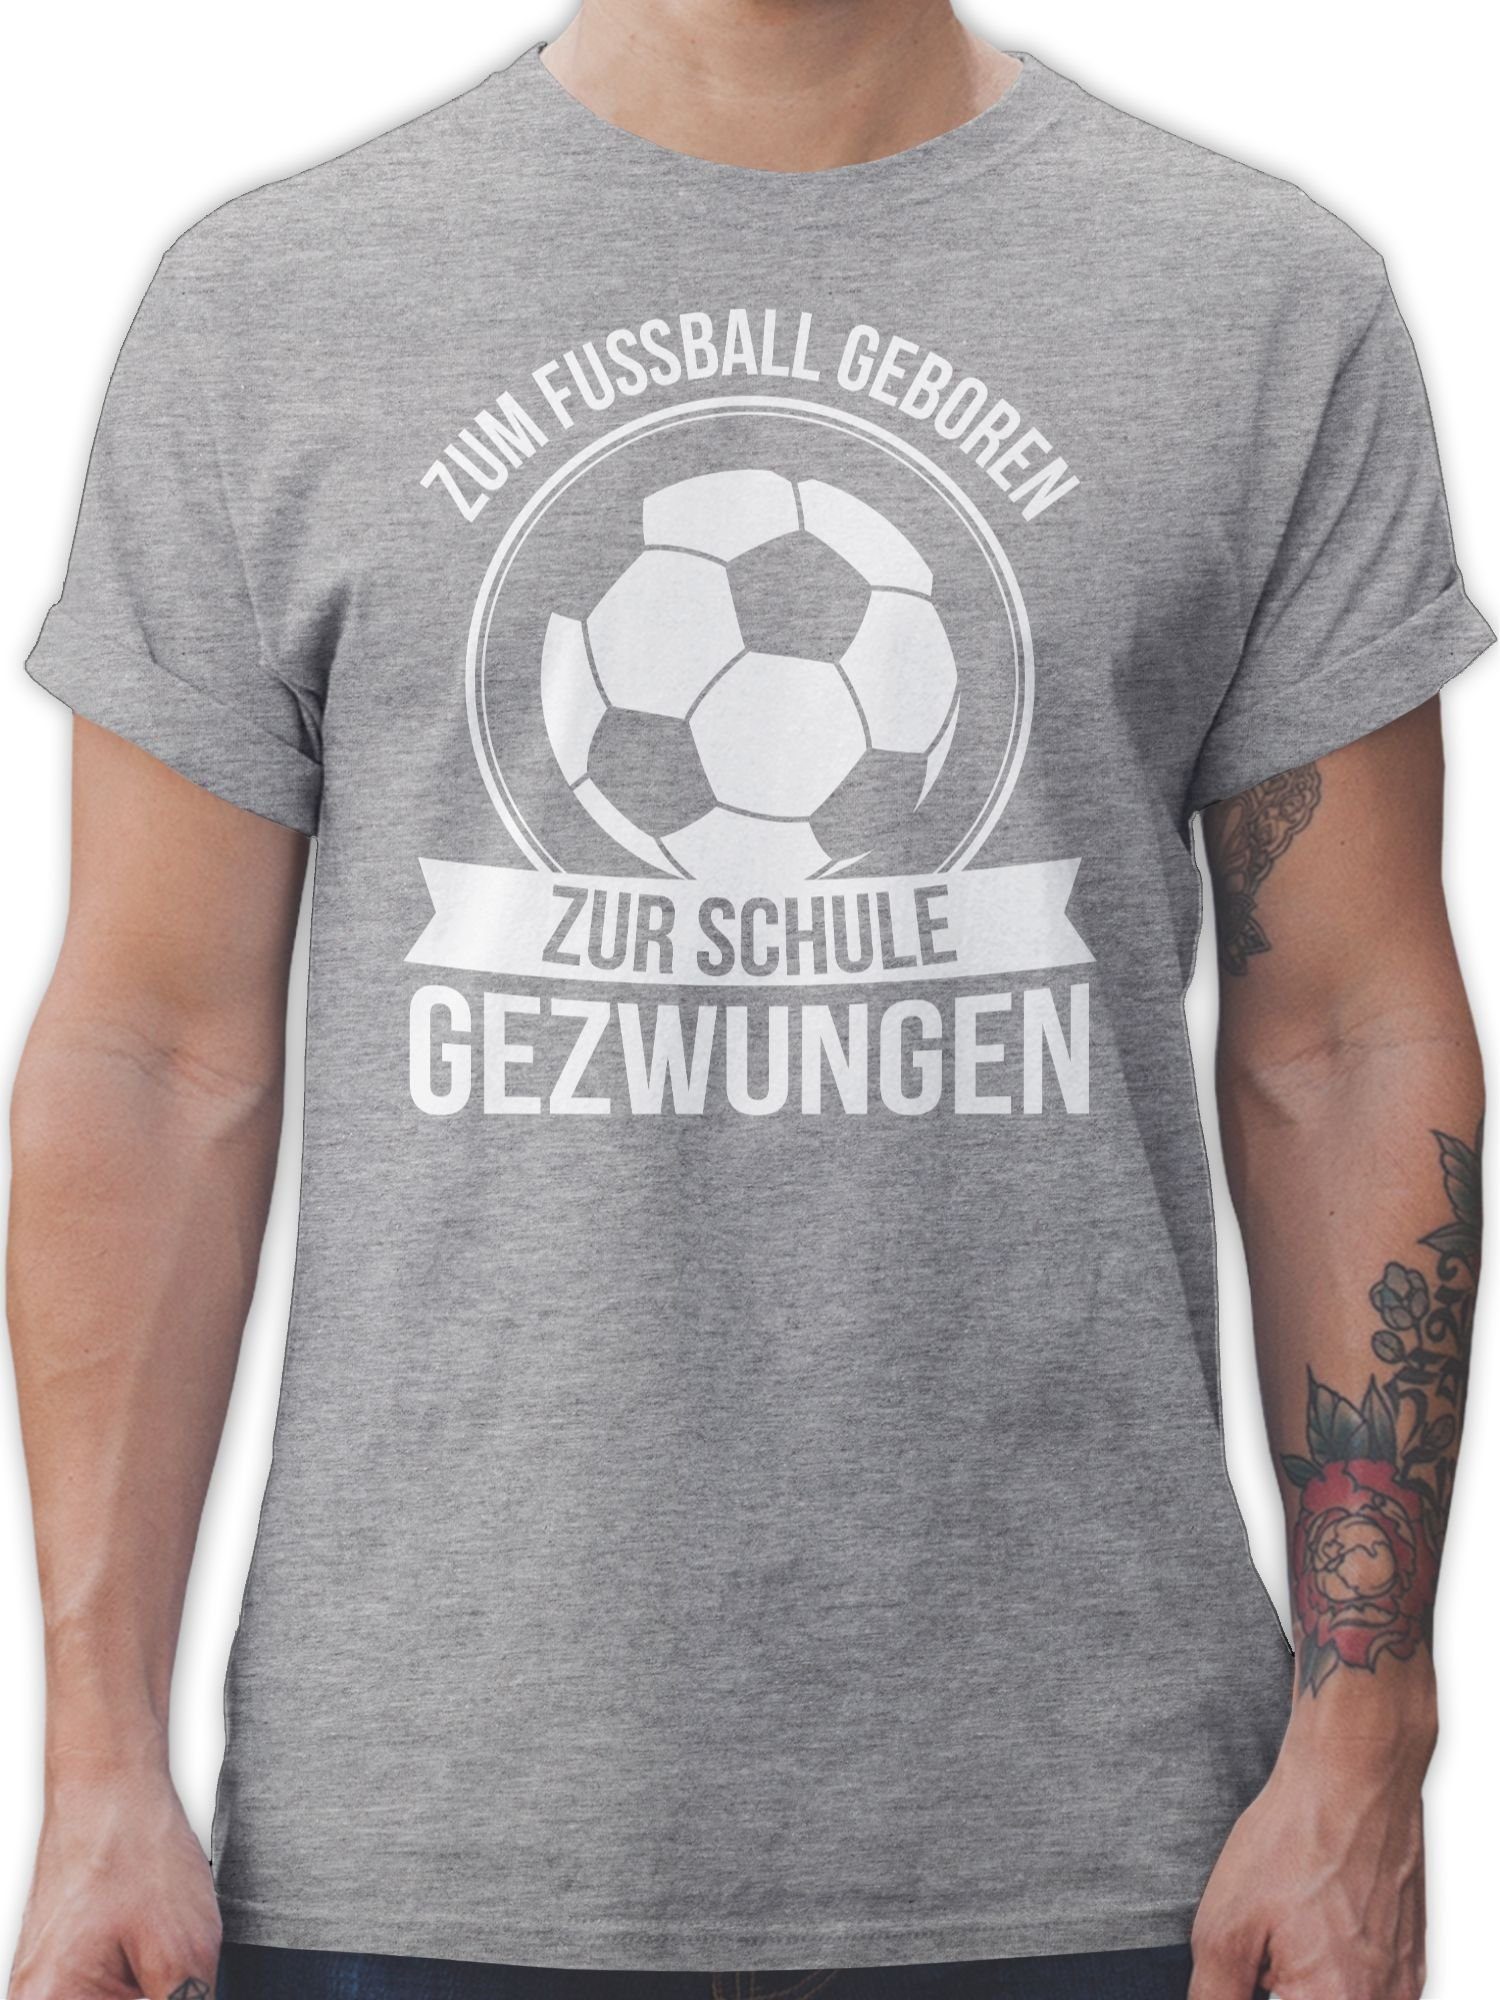 Fussball geboren Zum Shirtracer T-Shirt EM Schule zur Fußball 2024 gezwungen meliert 3 Grau